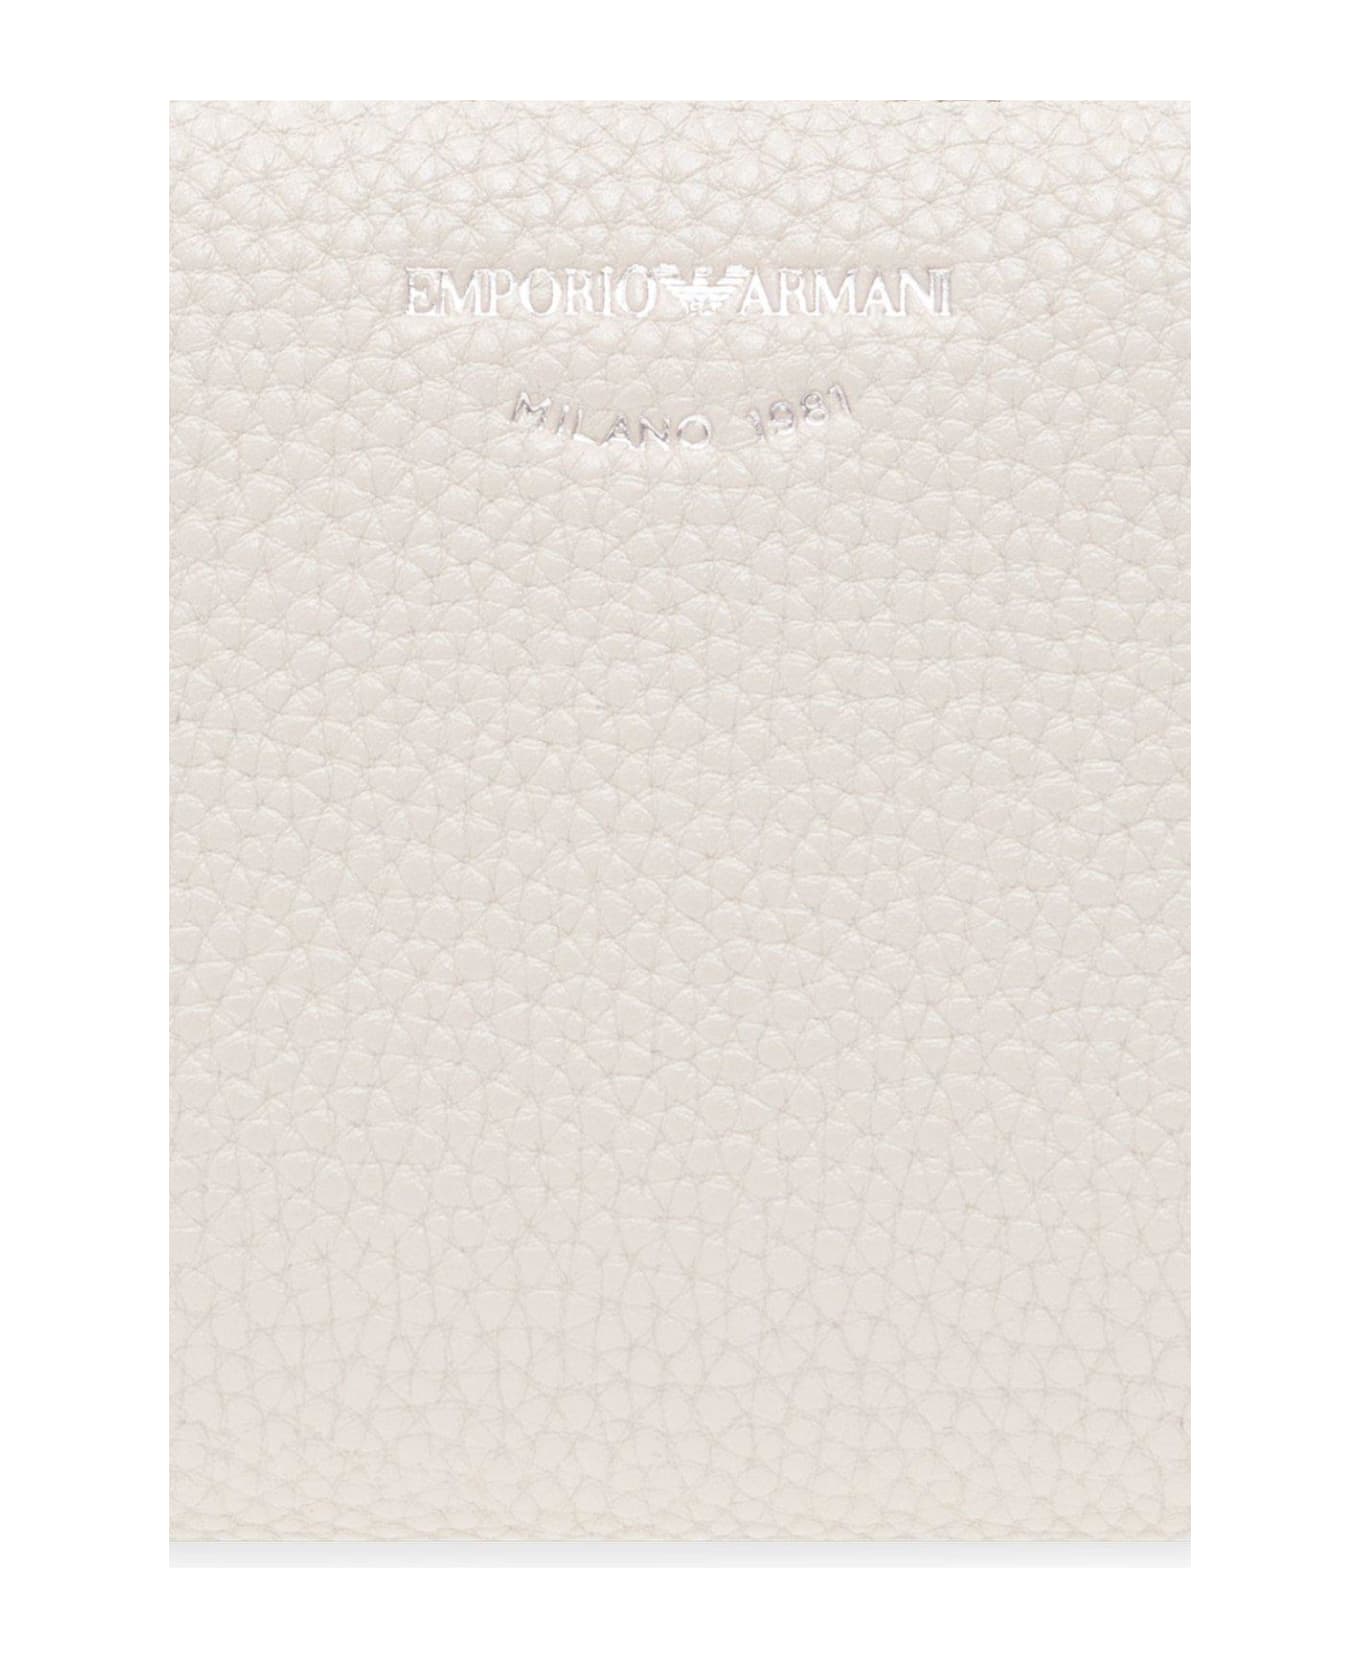 Emporio Armani Wallet With Logo - Grigio 財布